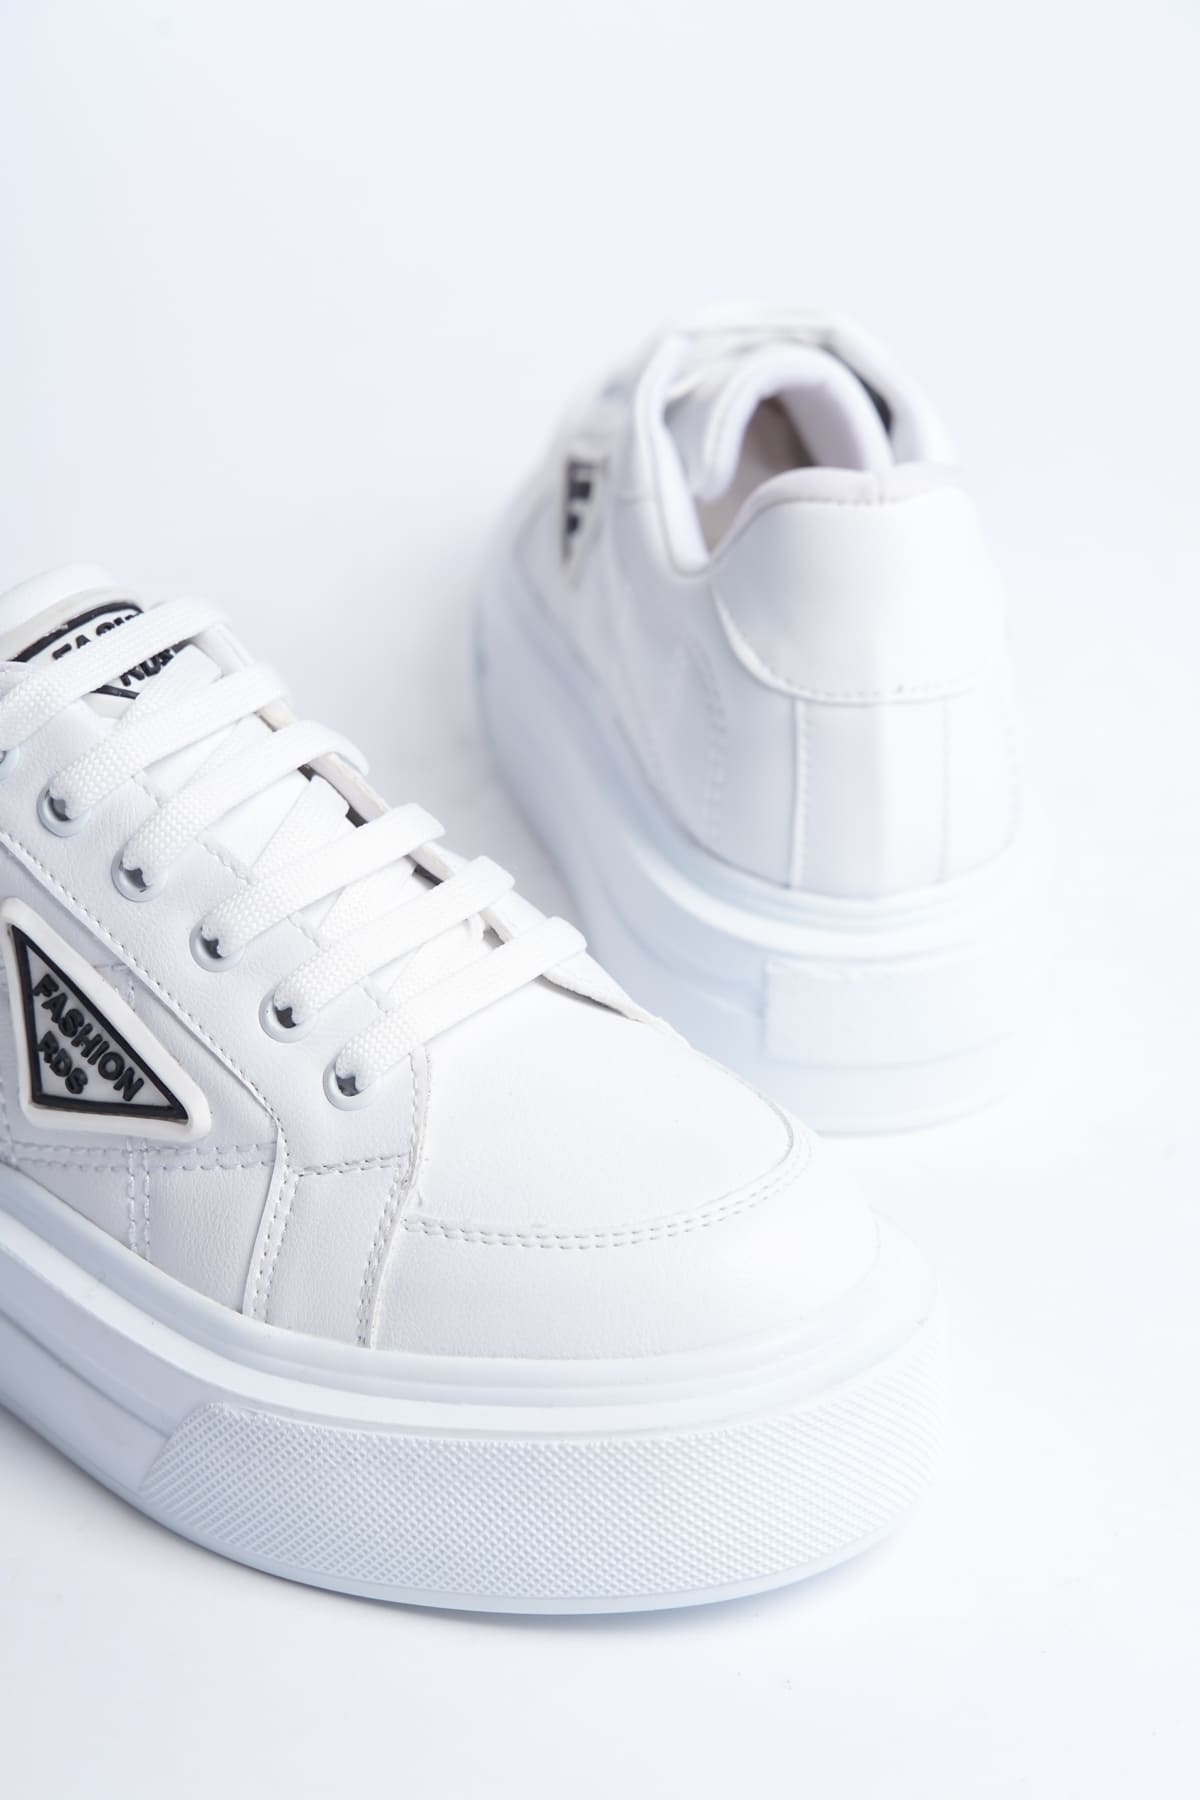 CLZ948  Bağcıklı Ortopedik Taban Desenli Kadın Sneaker Ayakkabı BT Beyaz